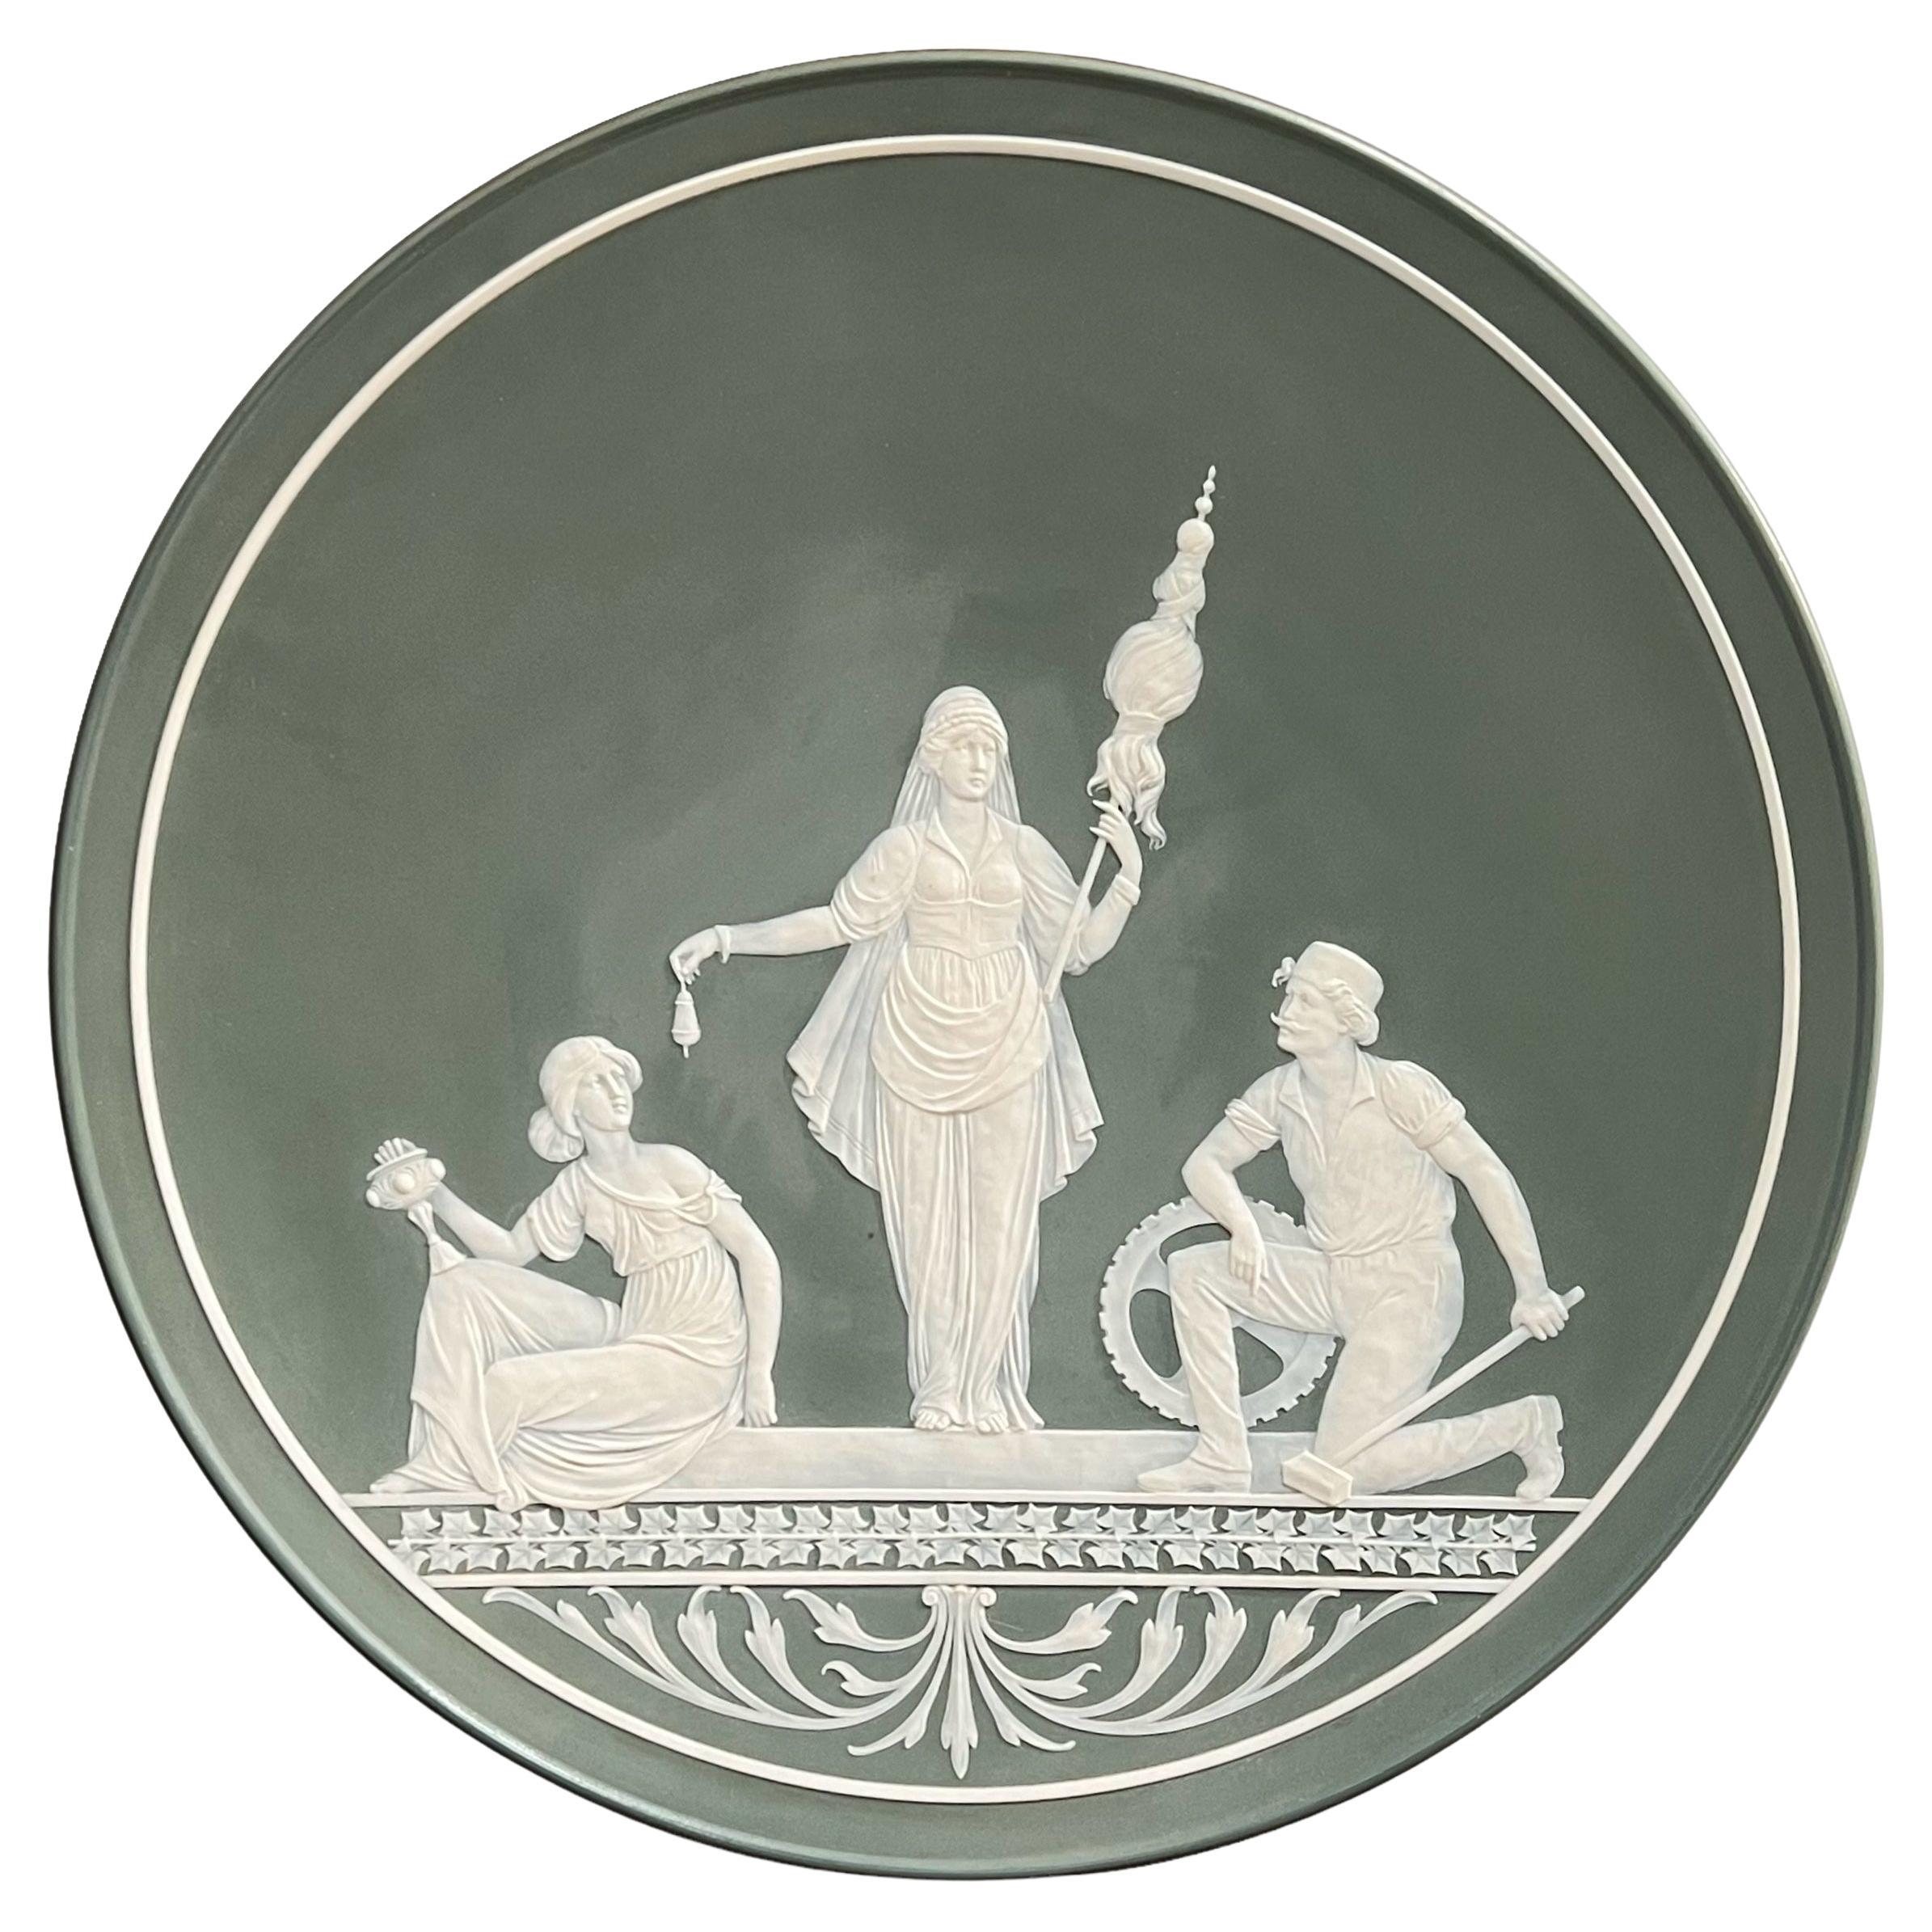 Mettlach-Ladegerät von Villeroy & Boch aus Phanolith-Porzellan (ähnlich wie Jasperware), das eine griechisch-römische Göttin mit Dienerschaft aus weißem Porzellan auf waldgrünem Grund darstellt.  In sehr gutem Zustand.